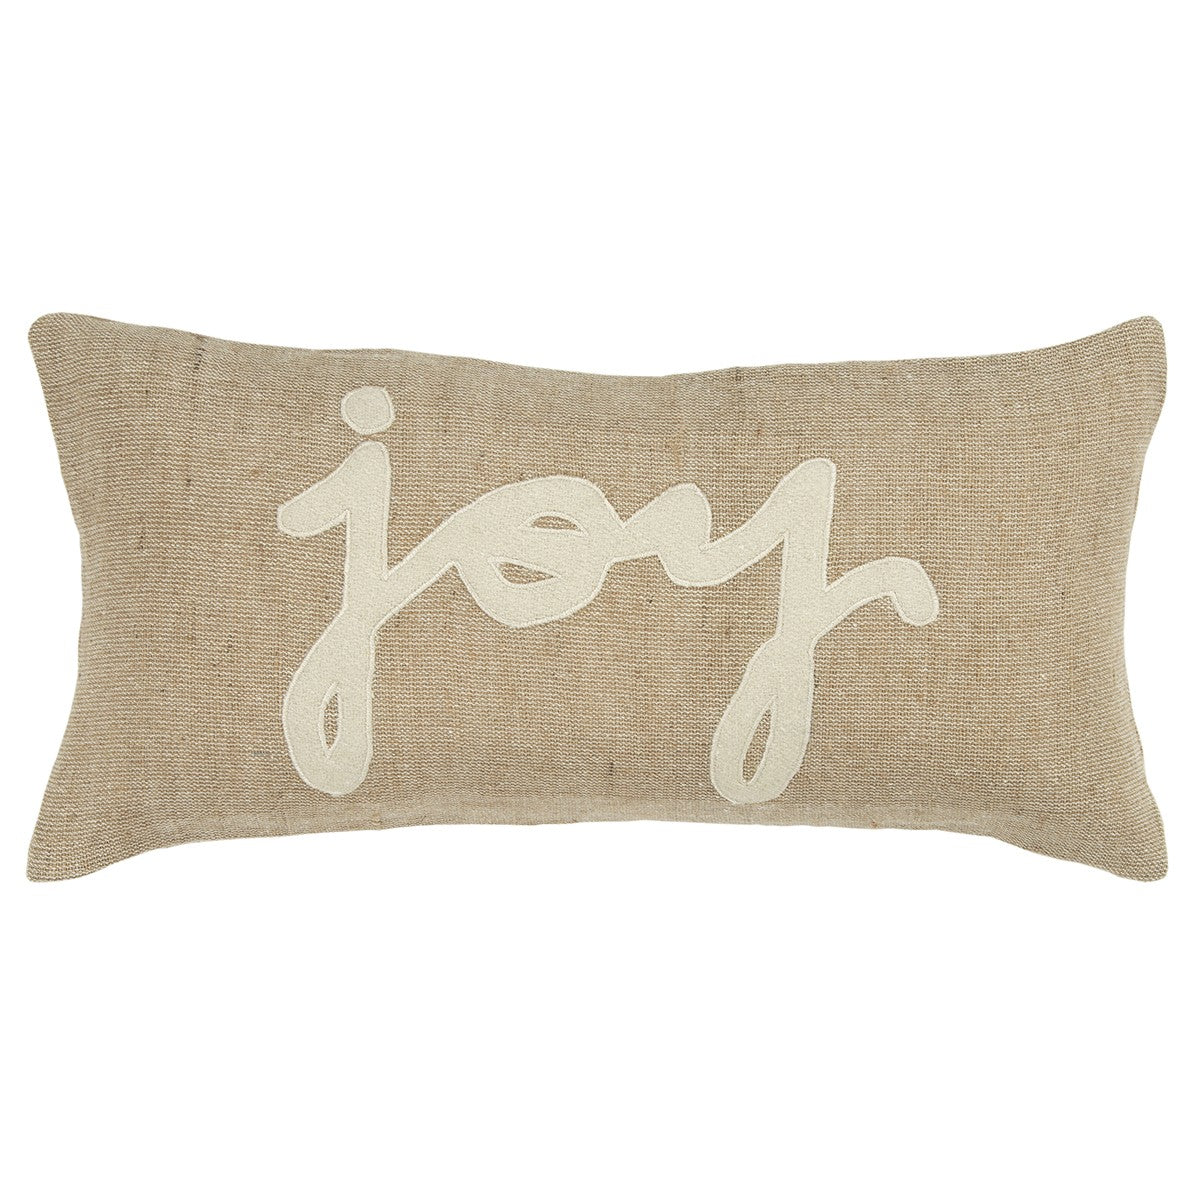 Tan Joy Felt Applique Burlap Lumbar Pillow